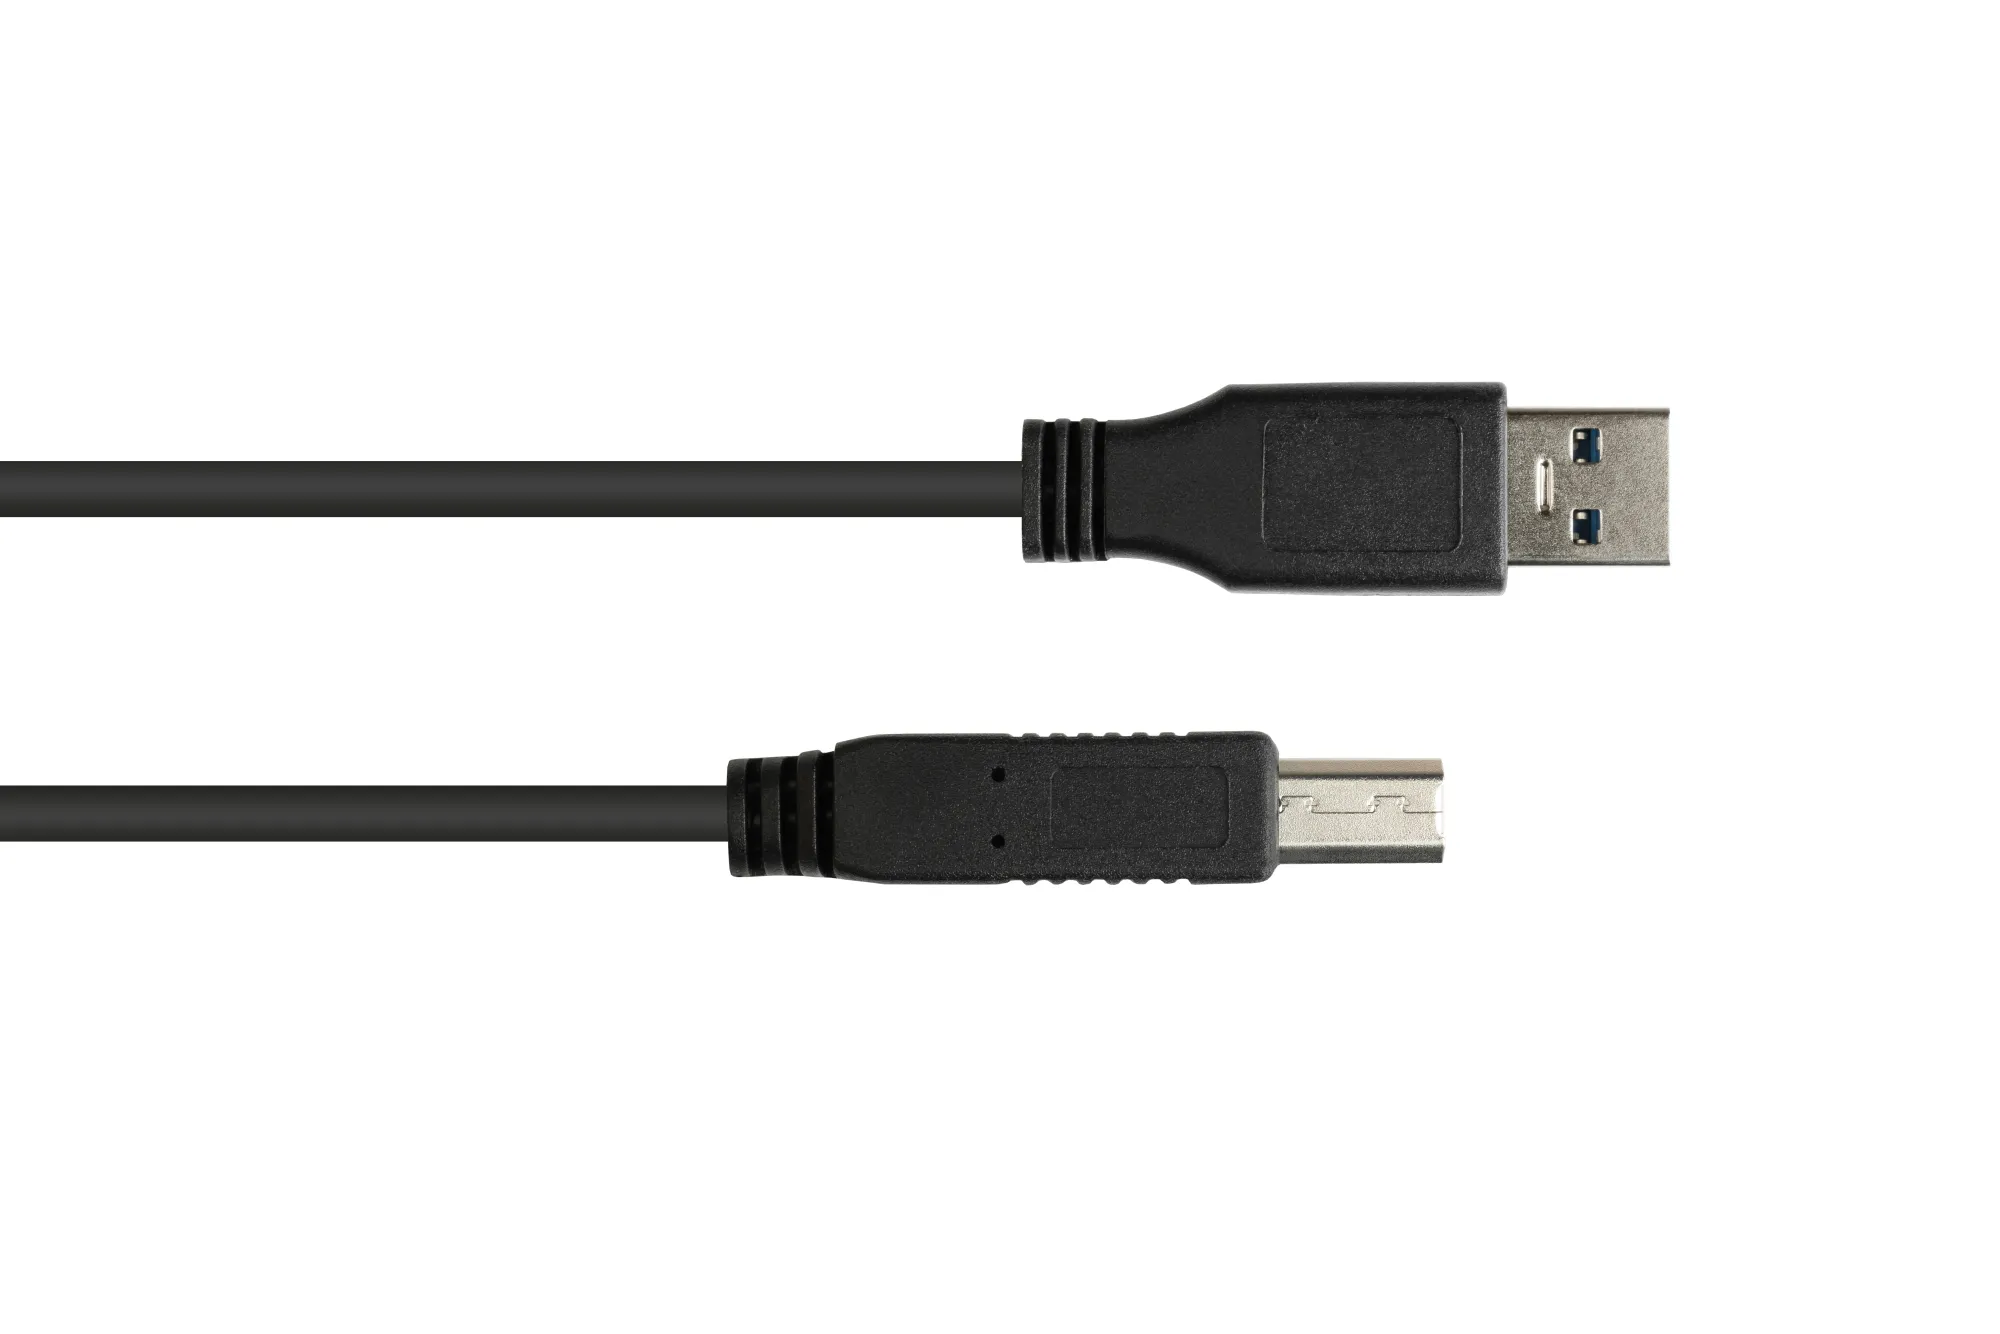 Anschlusskabel USB 3.0 Stecker A an Stecker B, schwarz, 0,5m, Good Connections®